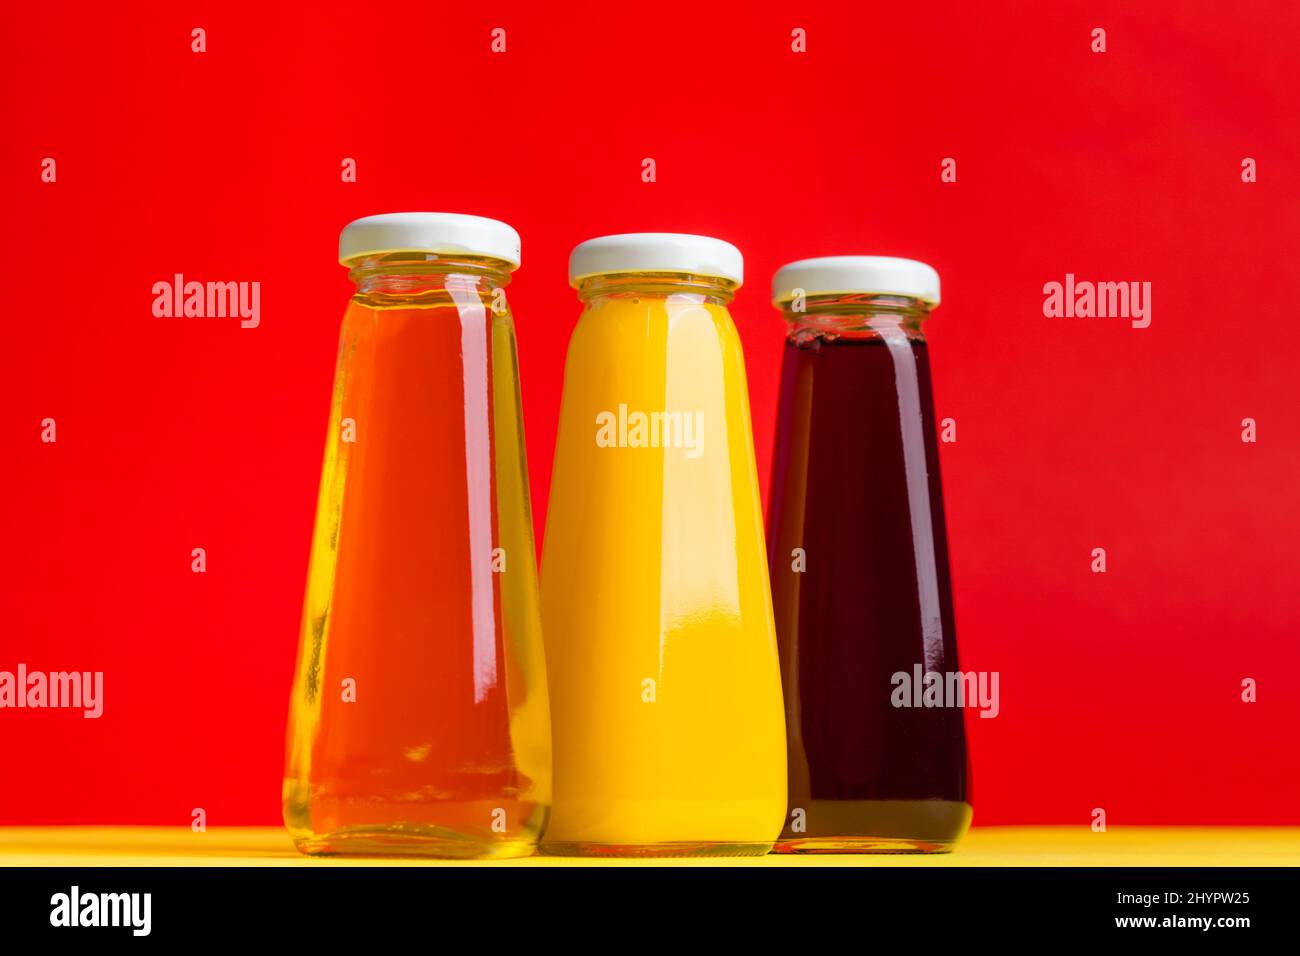 Bottiglie con bevanda a base di acqua halthy liquida gialla e rossa su sfondo giallo e rosso. Ciliegia di mela arancione Foto Stock